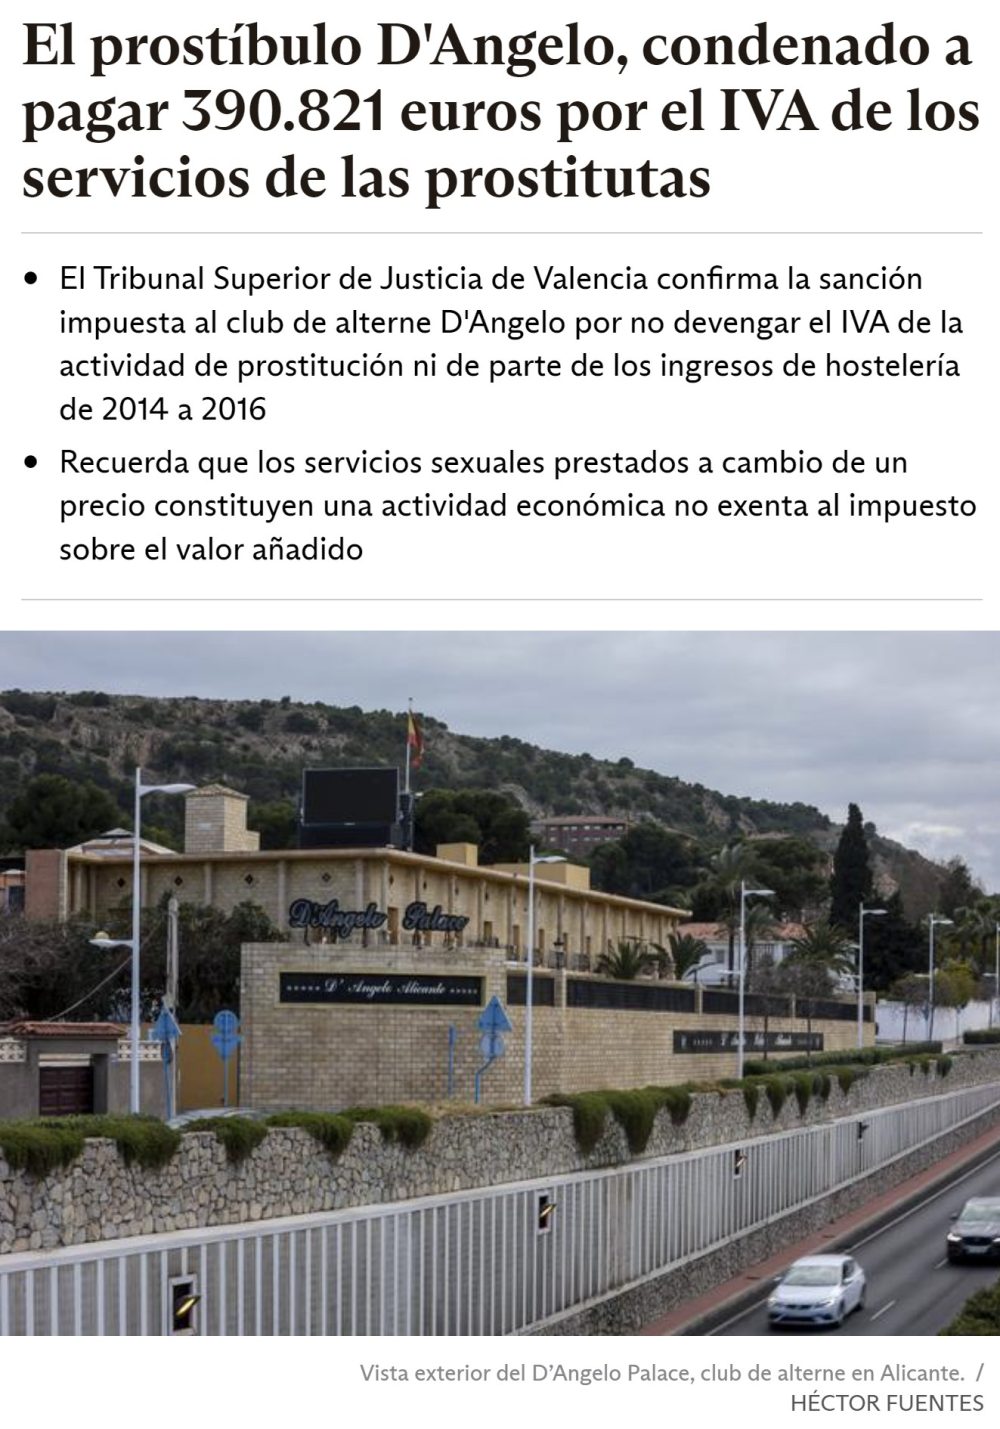 Valencia reclamando el IVA de trabajos secsuales...